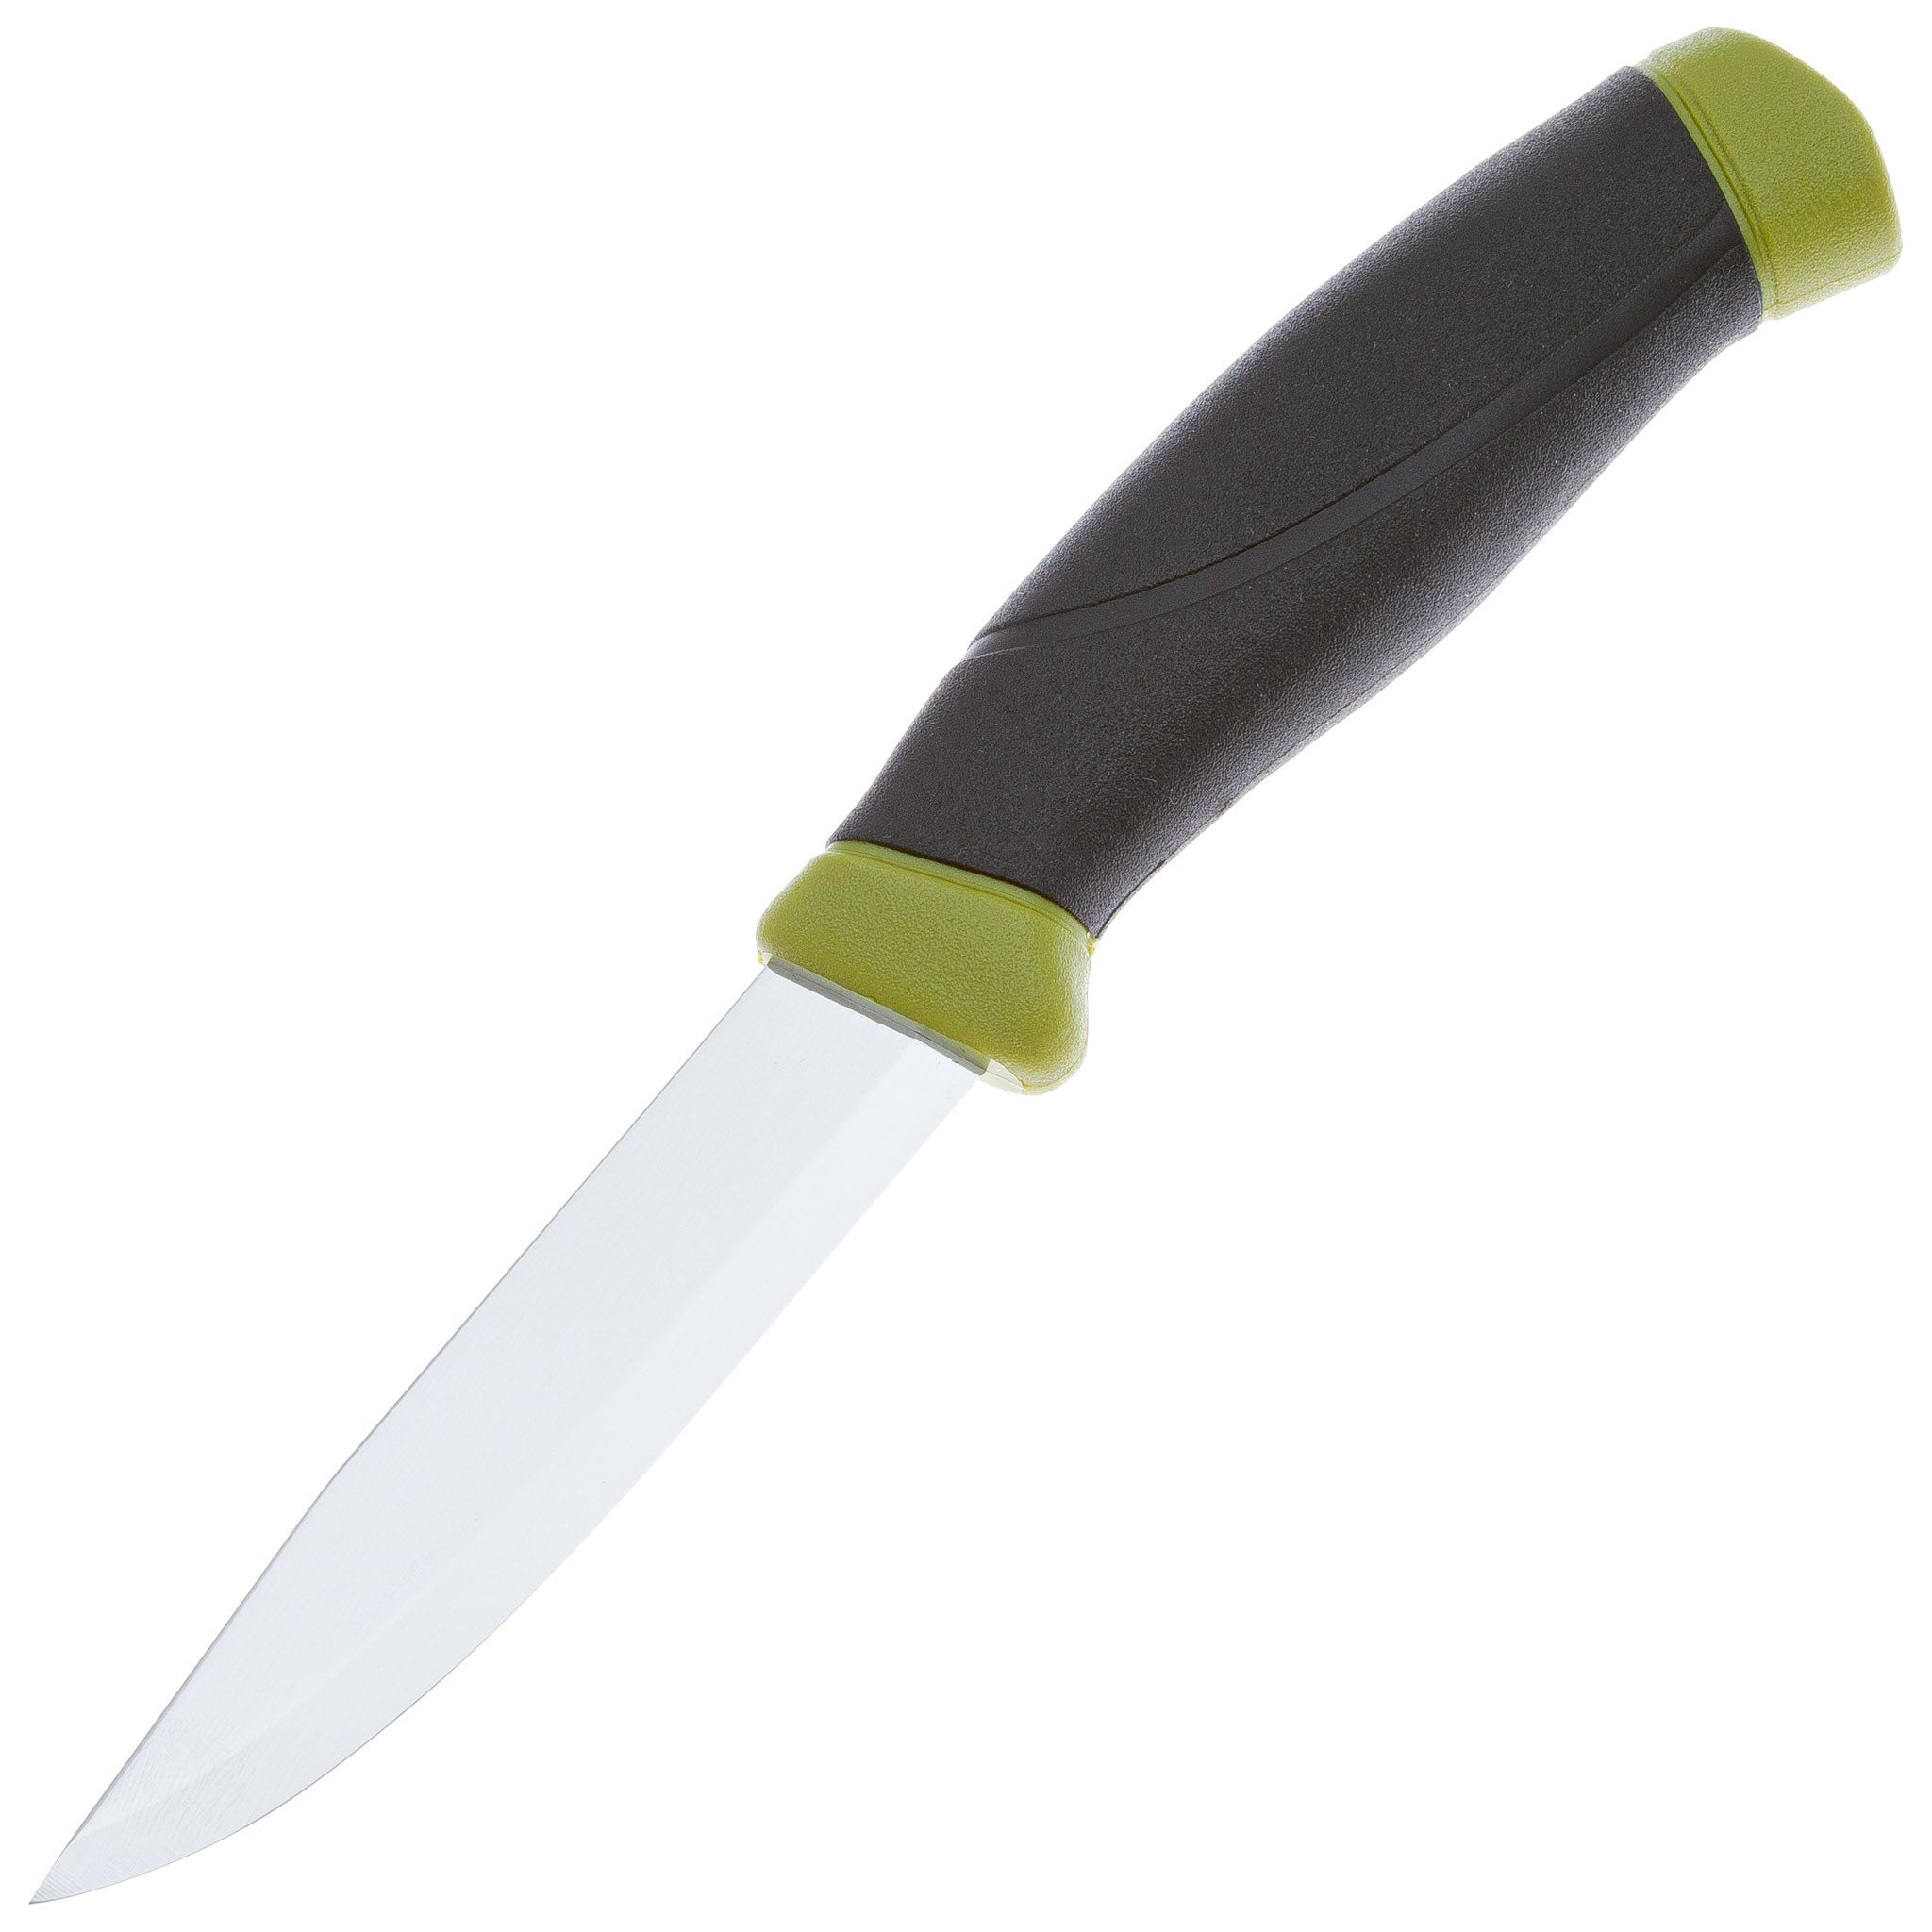 Нож с фиксированным лезвием Morakniv Companion, сталь Sandvik 12C27, рукоять резина, olive green - фото 1